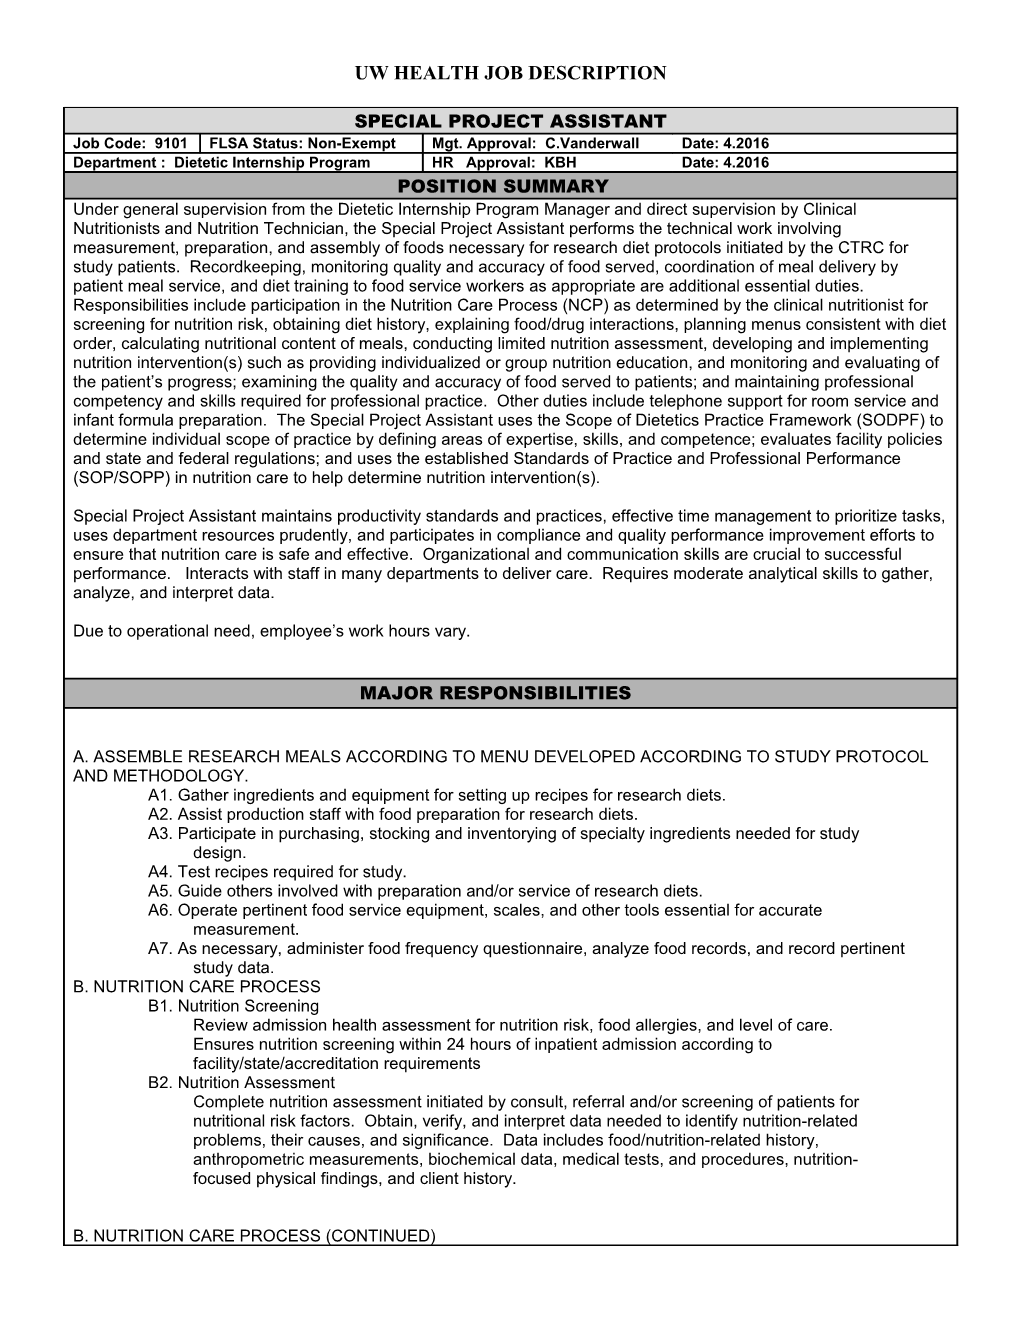 Job Description for Job Title s5